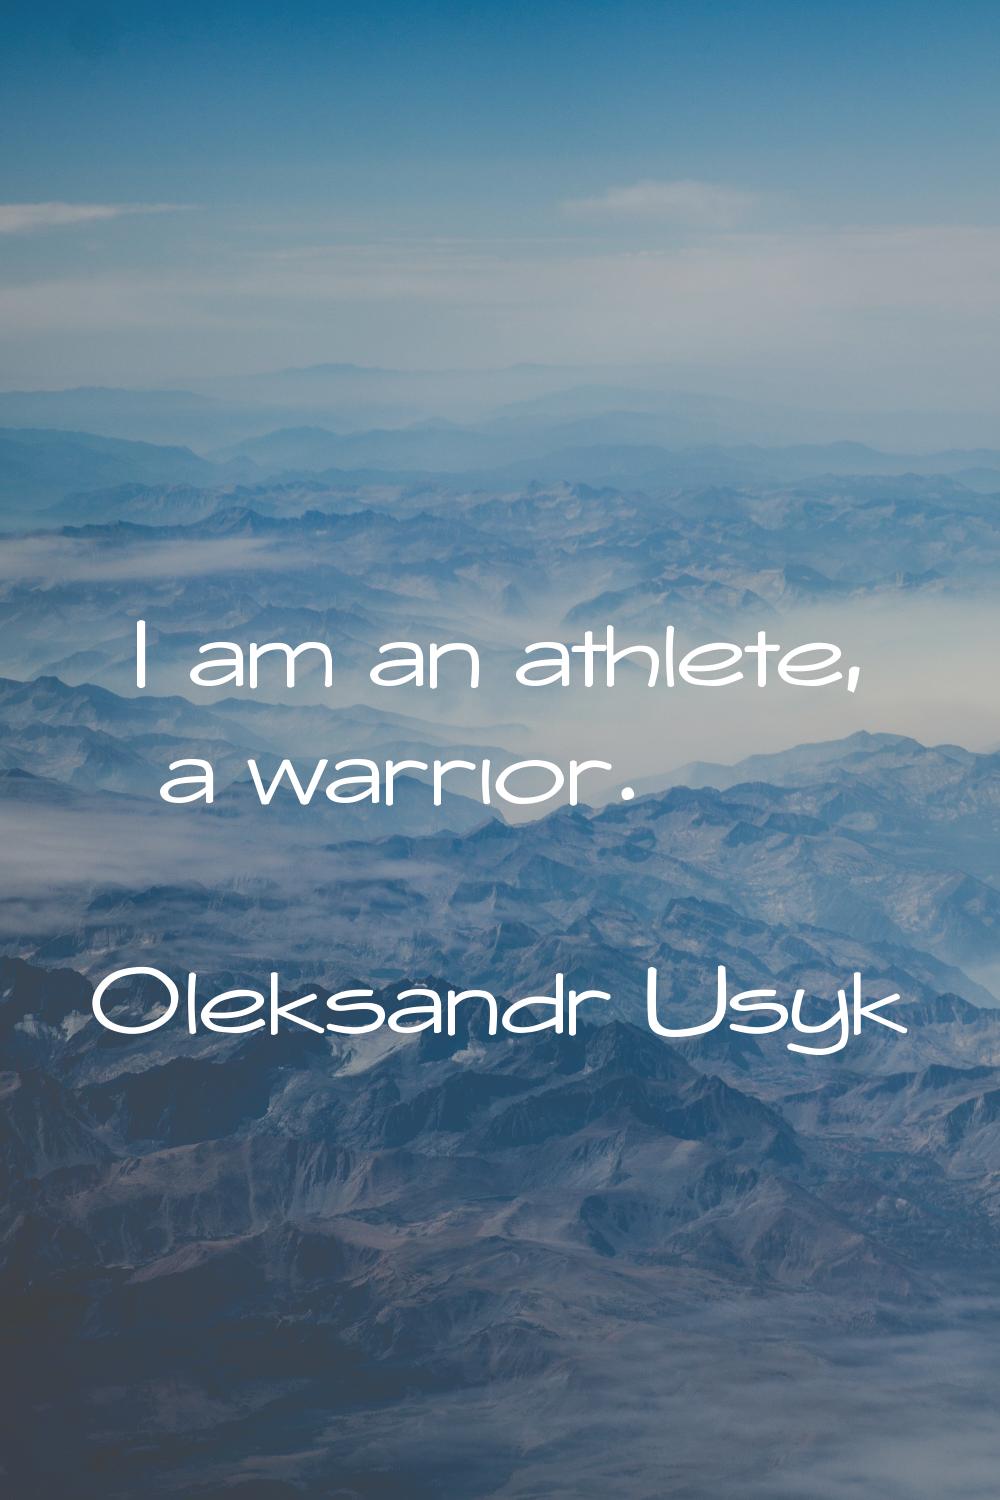 I am an athlete, a warrior.